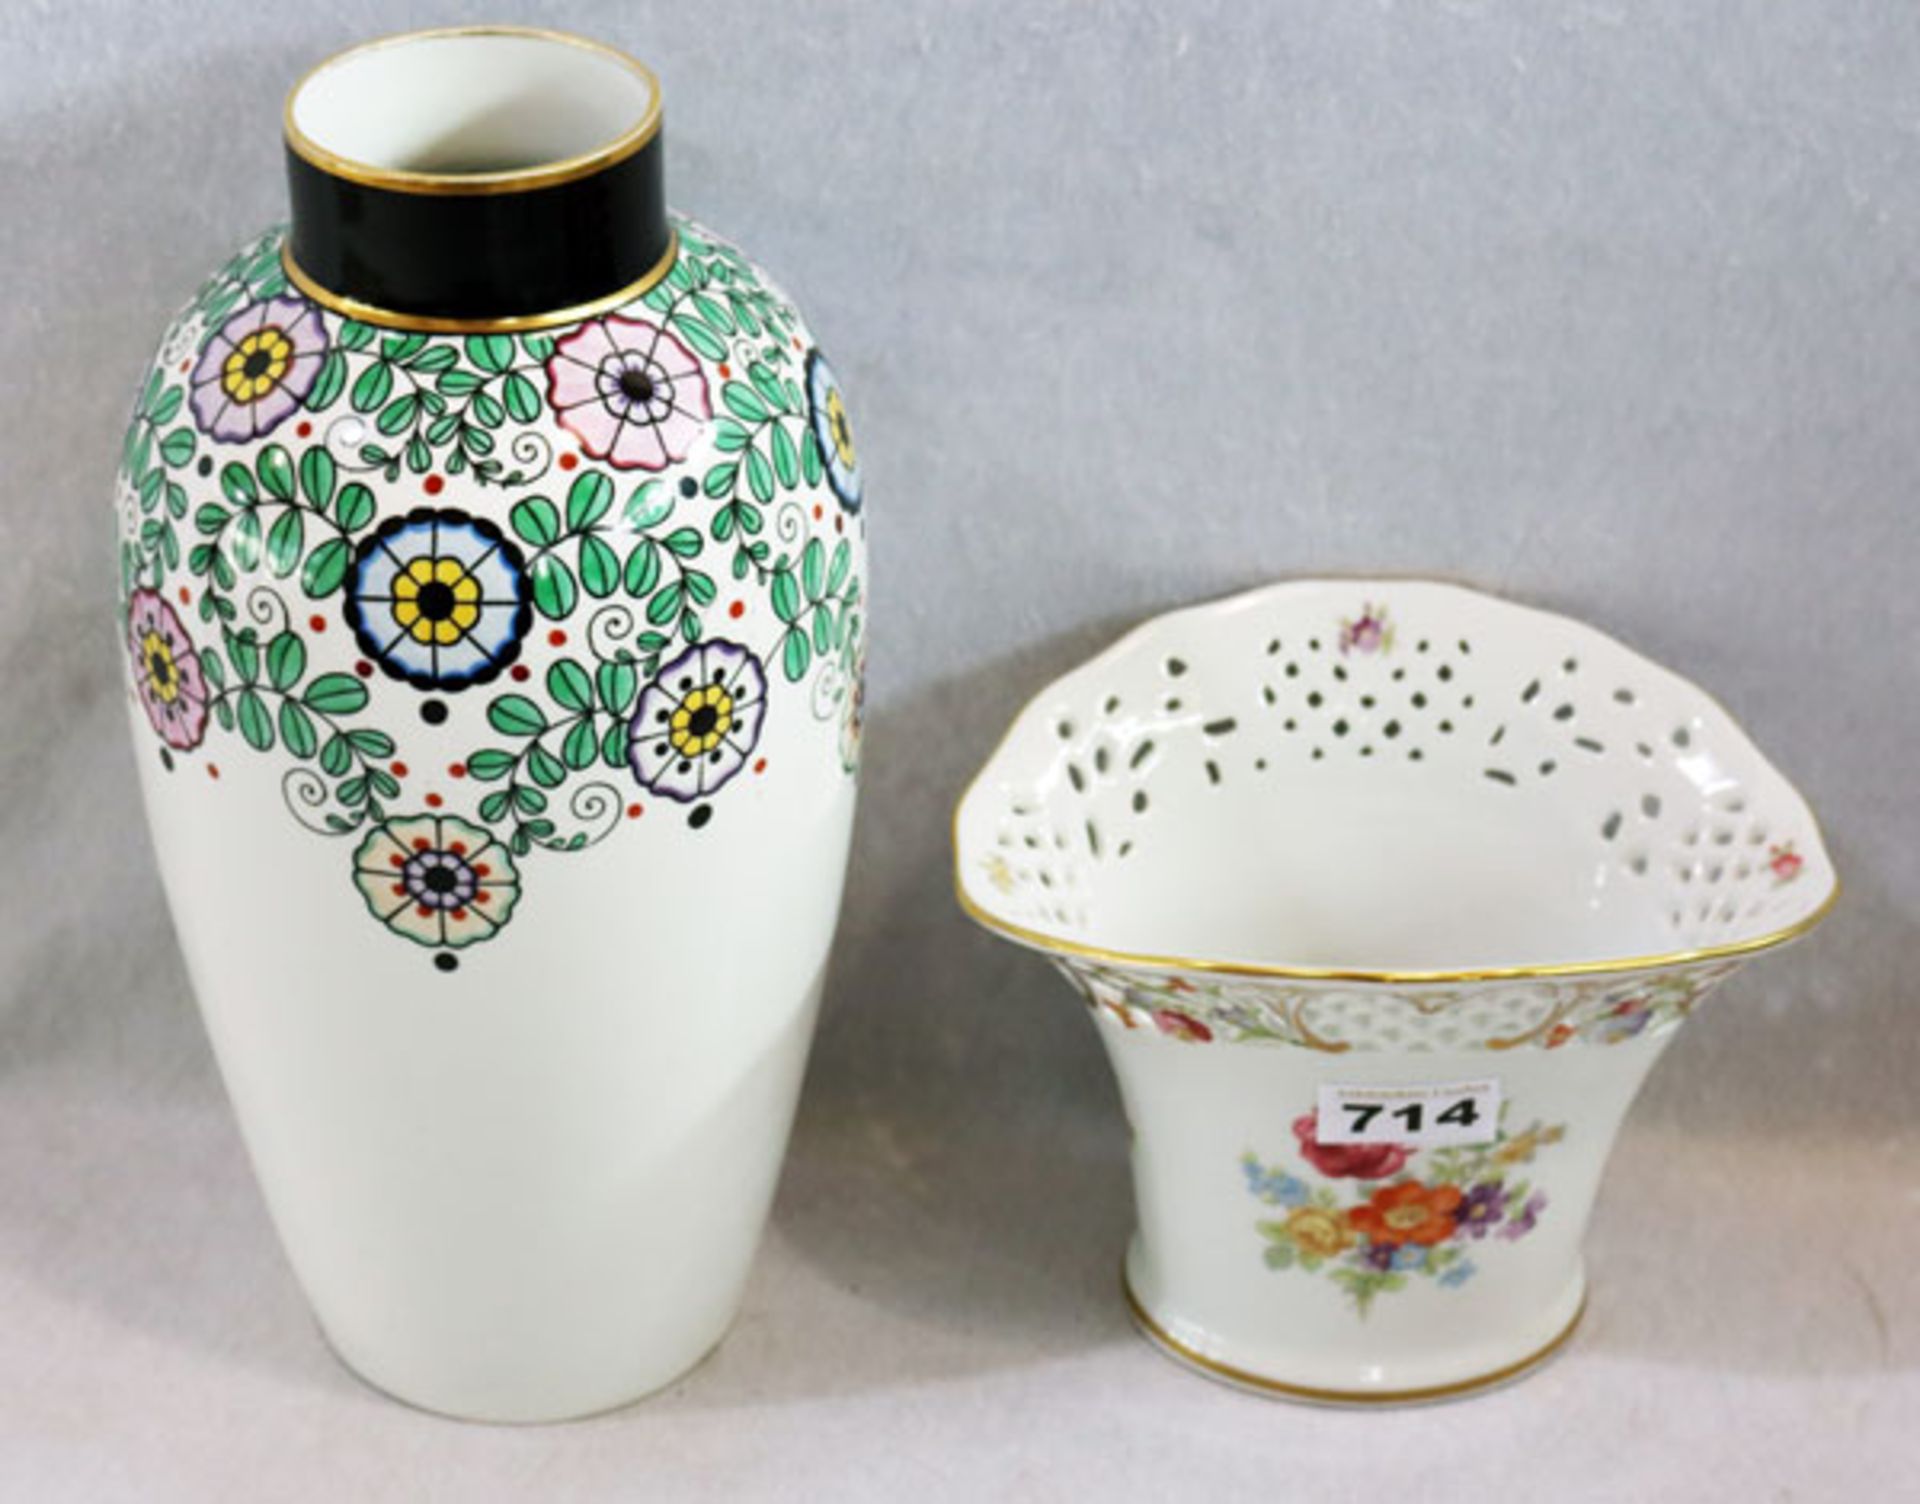 Porzellan Vase mit Blumendekor, gemarkt Müller, Selb, H 31 cm, und Schumann Porzellan Vase mit